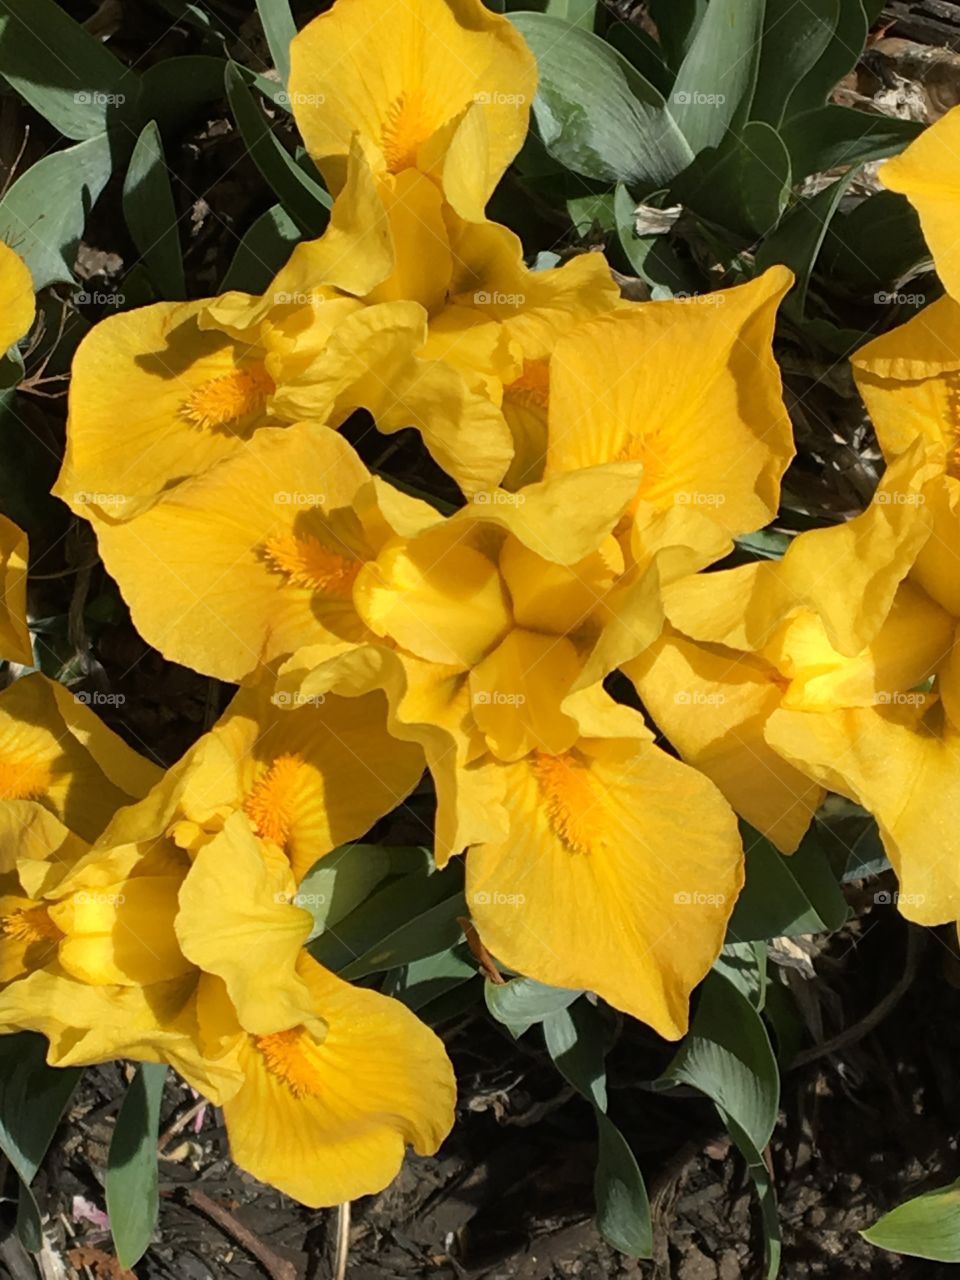 Yellow Irises 